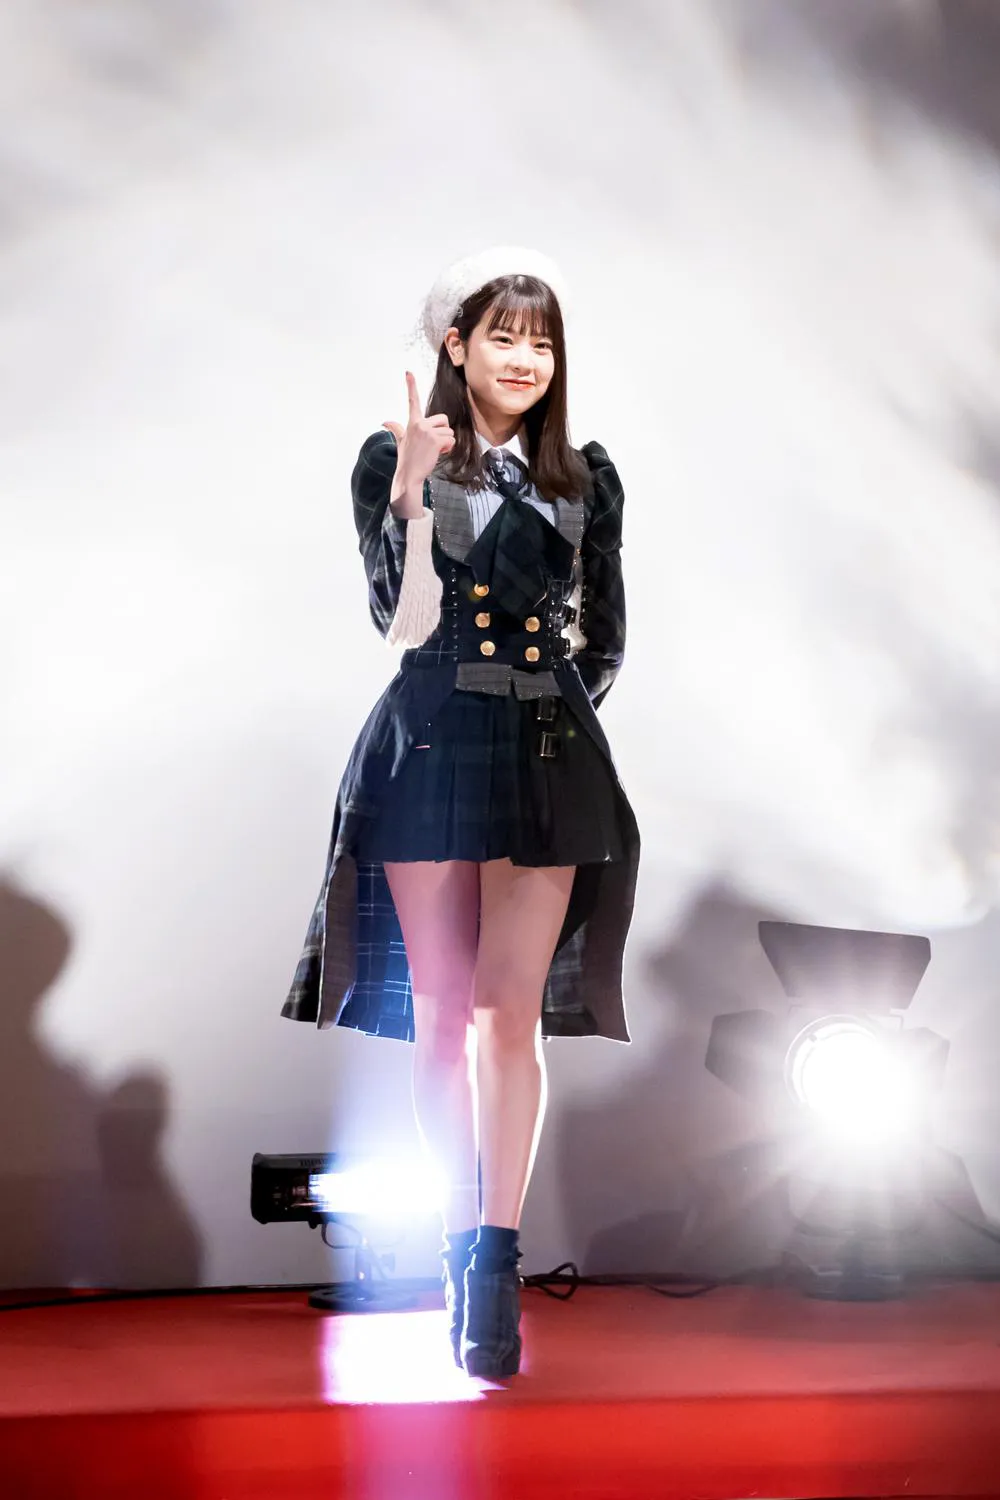 吉川七瀬はAKB48・38枚目シングル「希望的リフレイン」(2014年)の島崎遥香の衣装で登場　